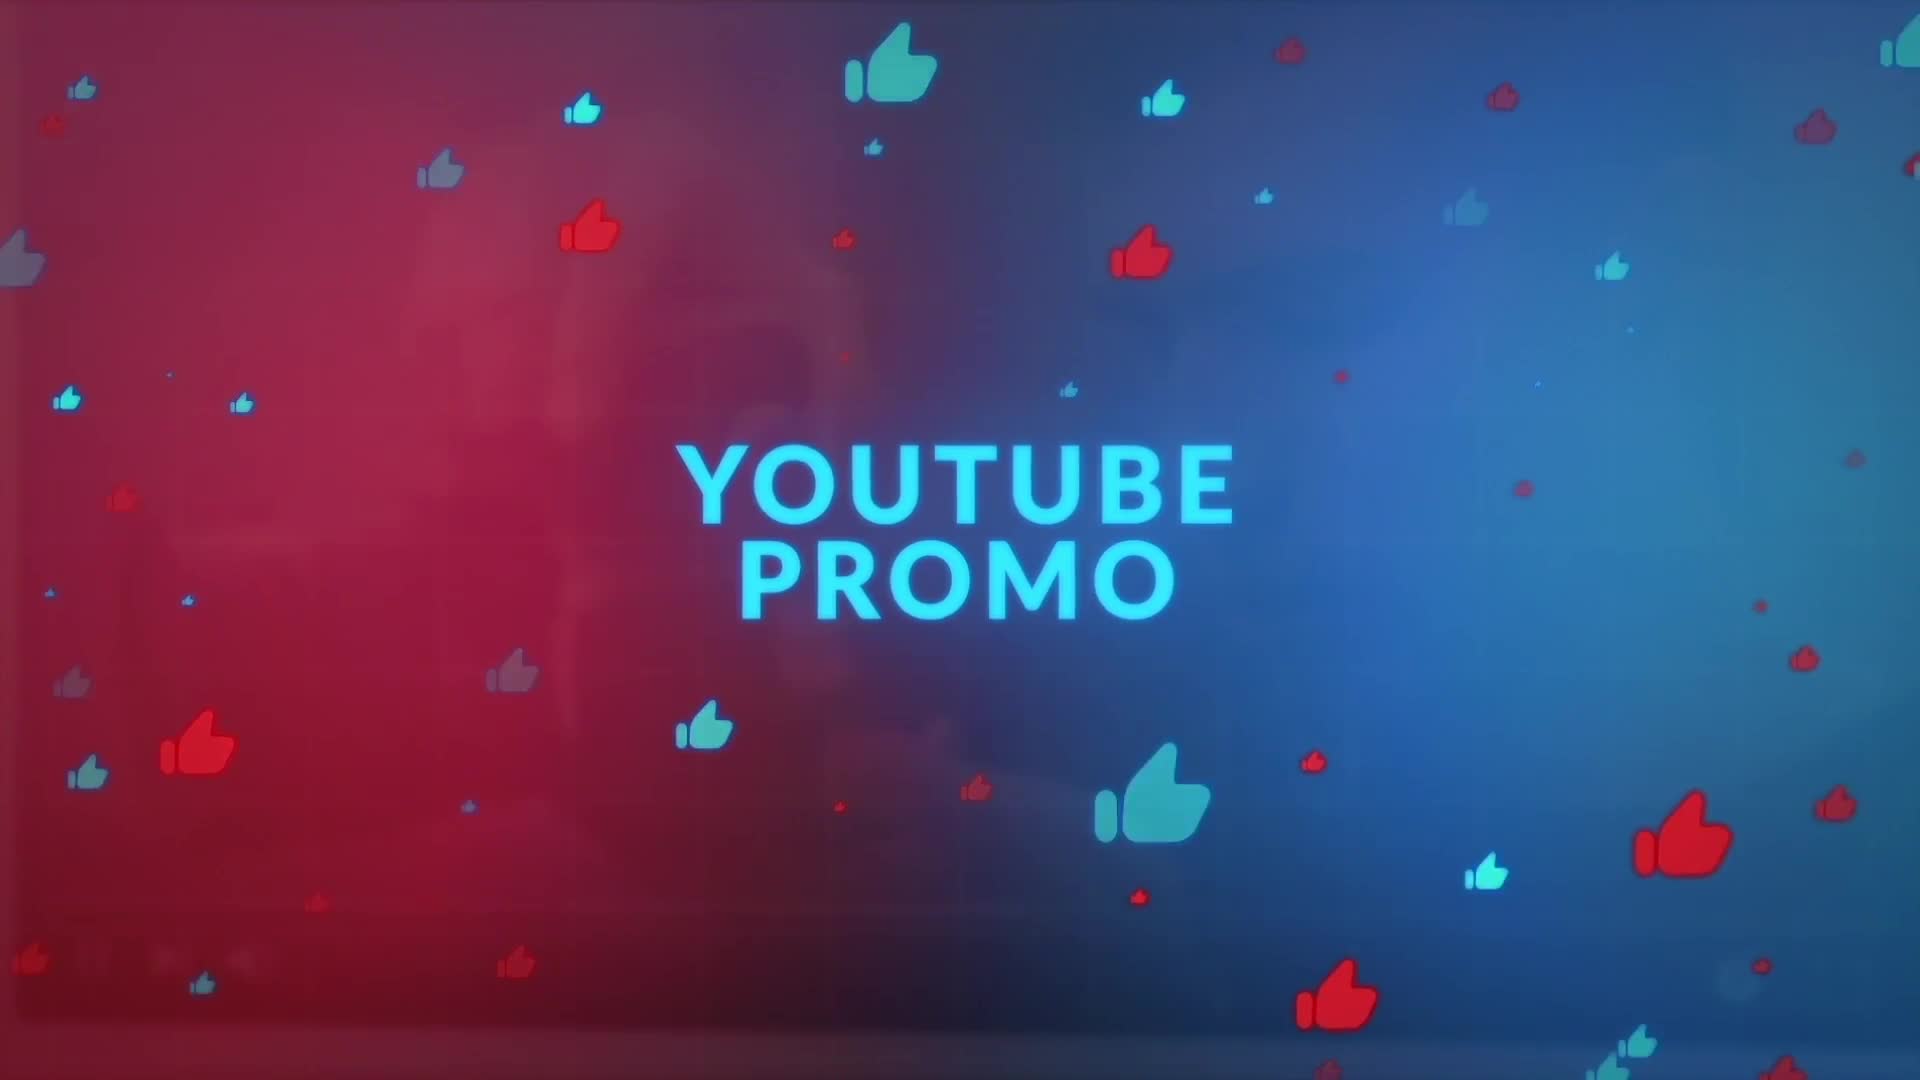 YouTube Promo Videohive 24747632 Premiere Pro Image 1